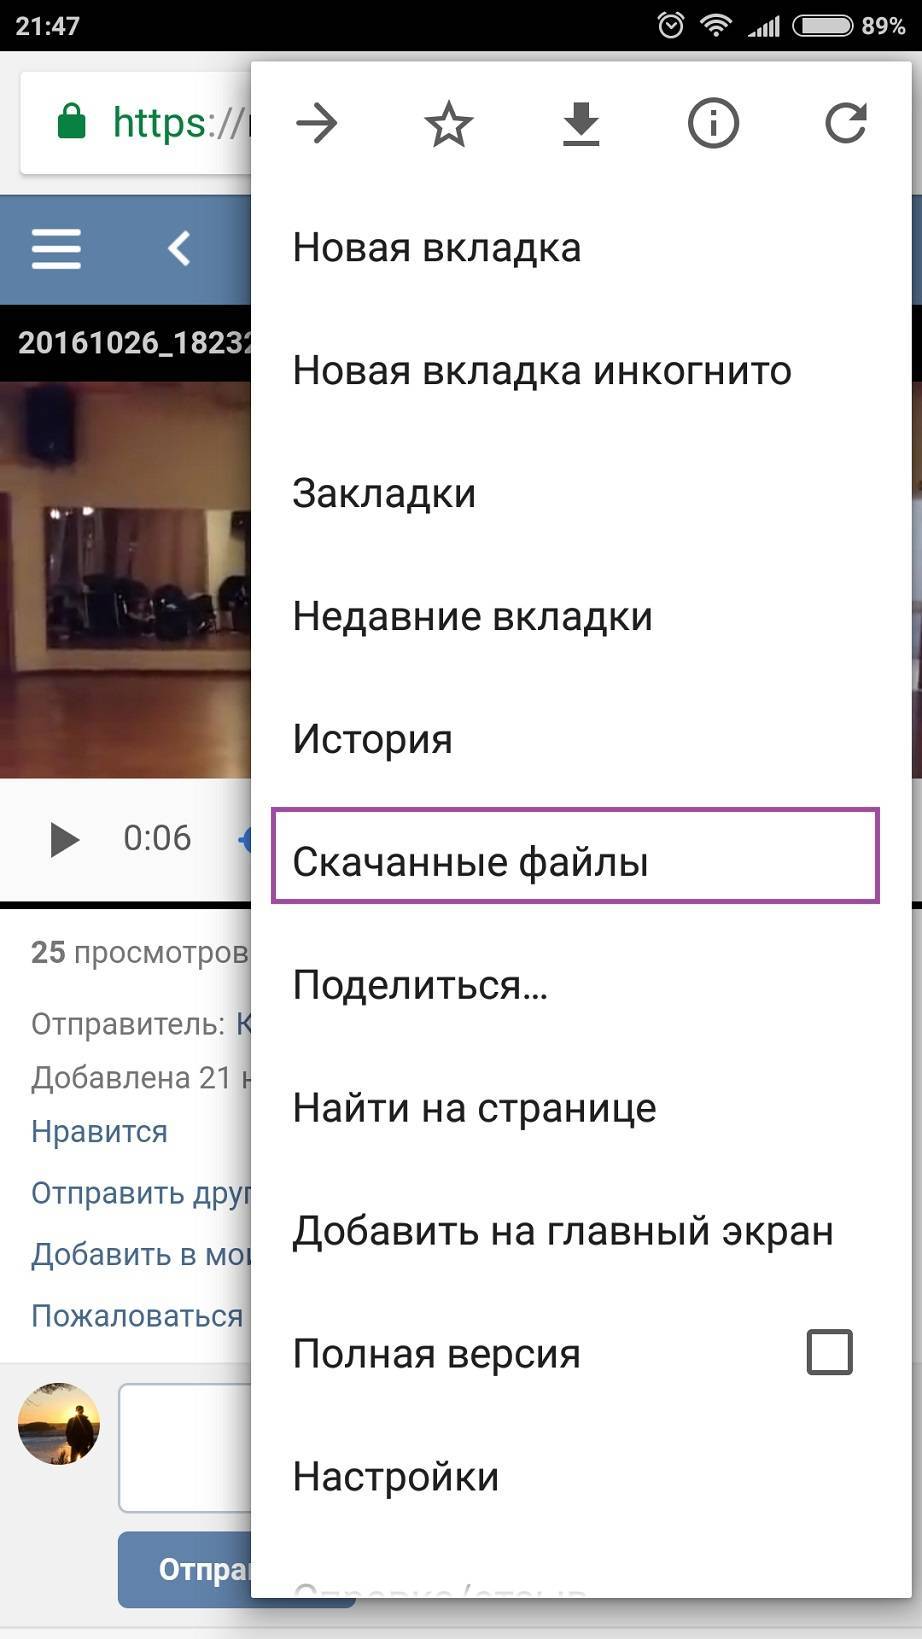 Как в вк добавить видео с телефона - все способы тарифкин.ру
как в вк добавить видео с телефона - все способы